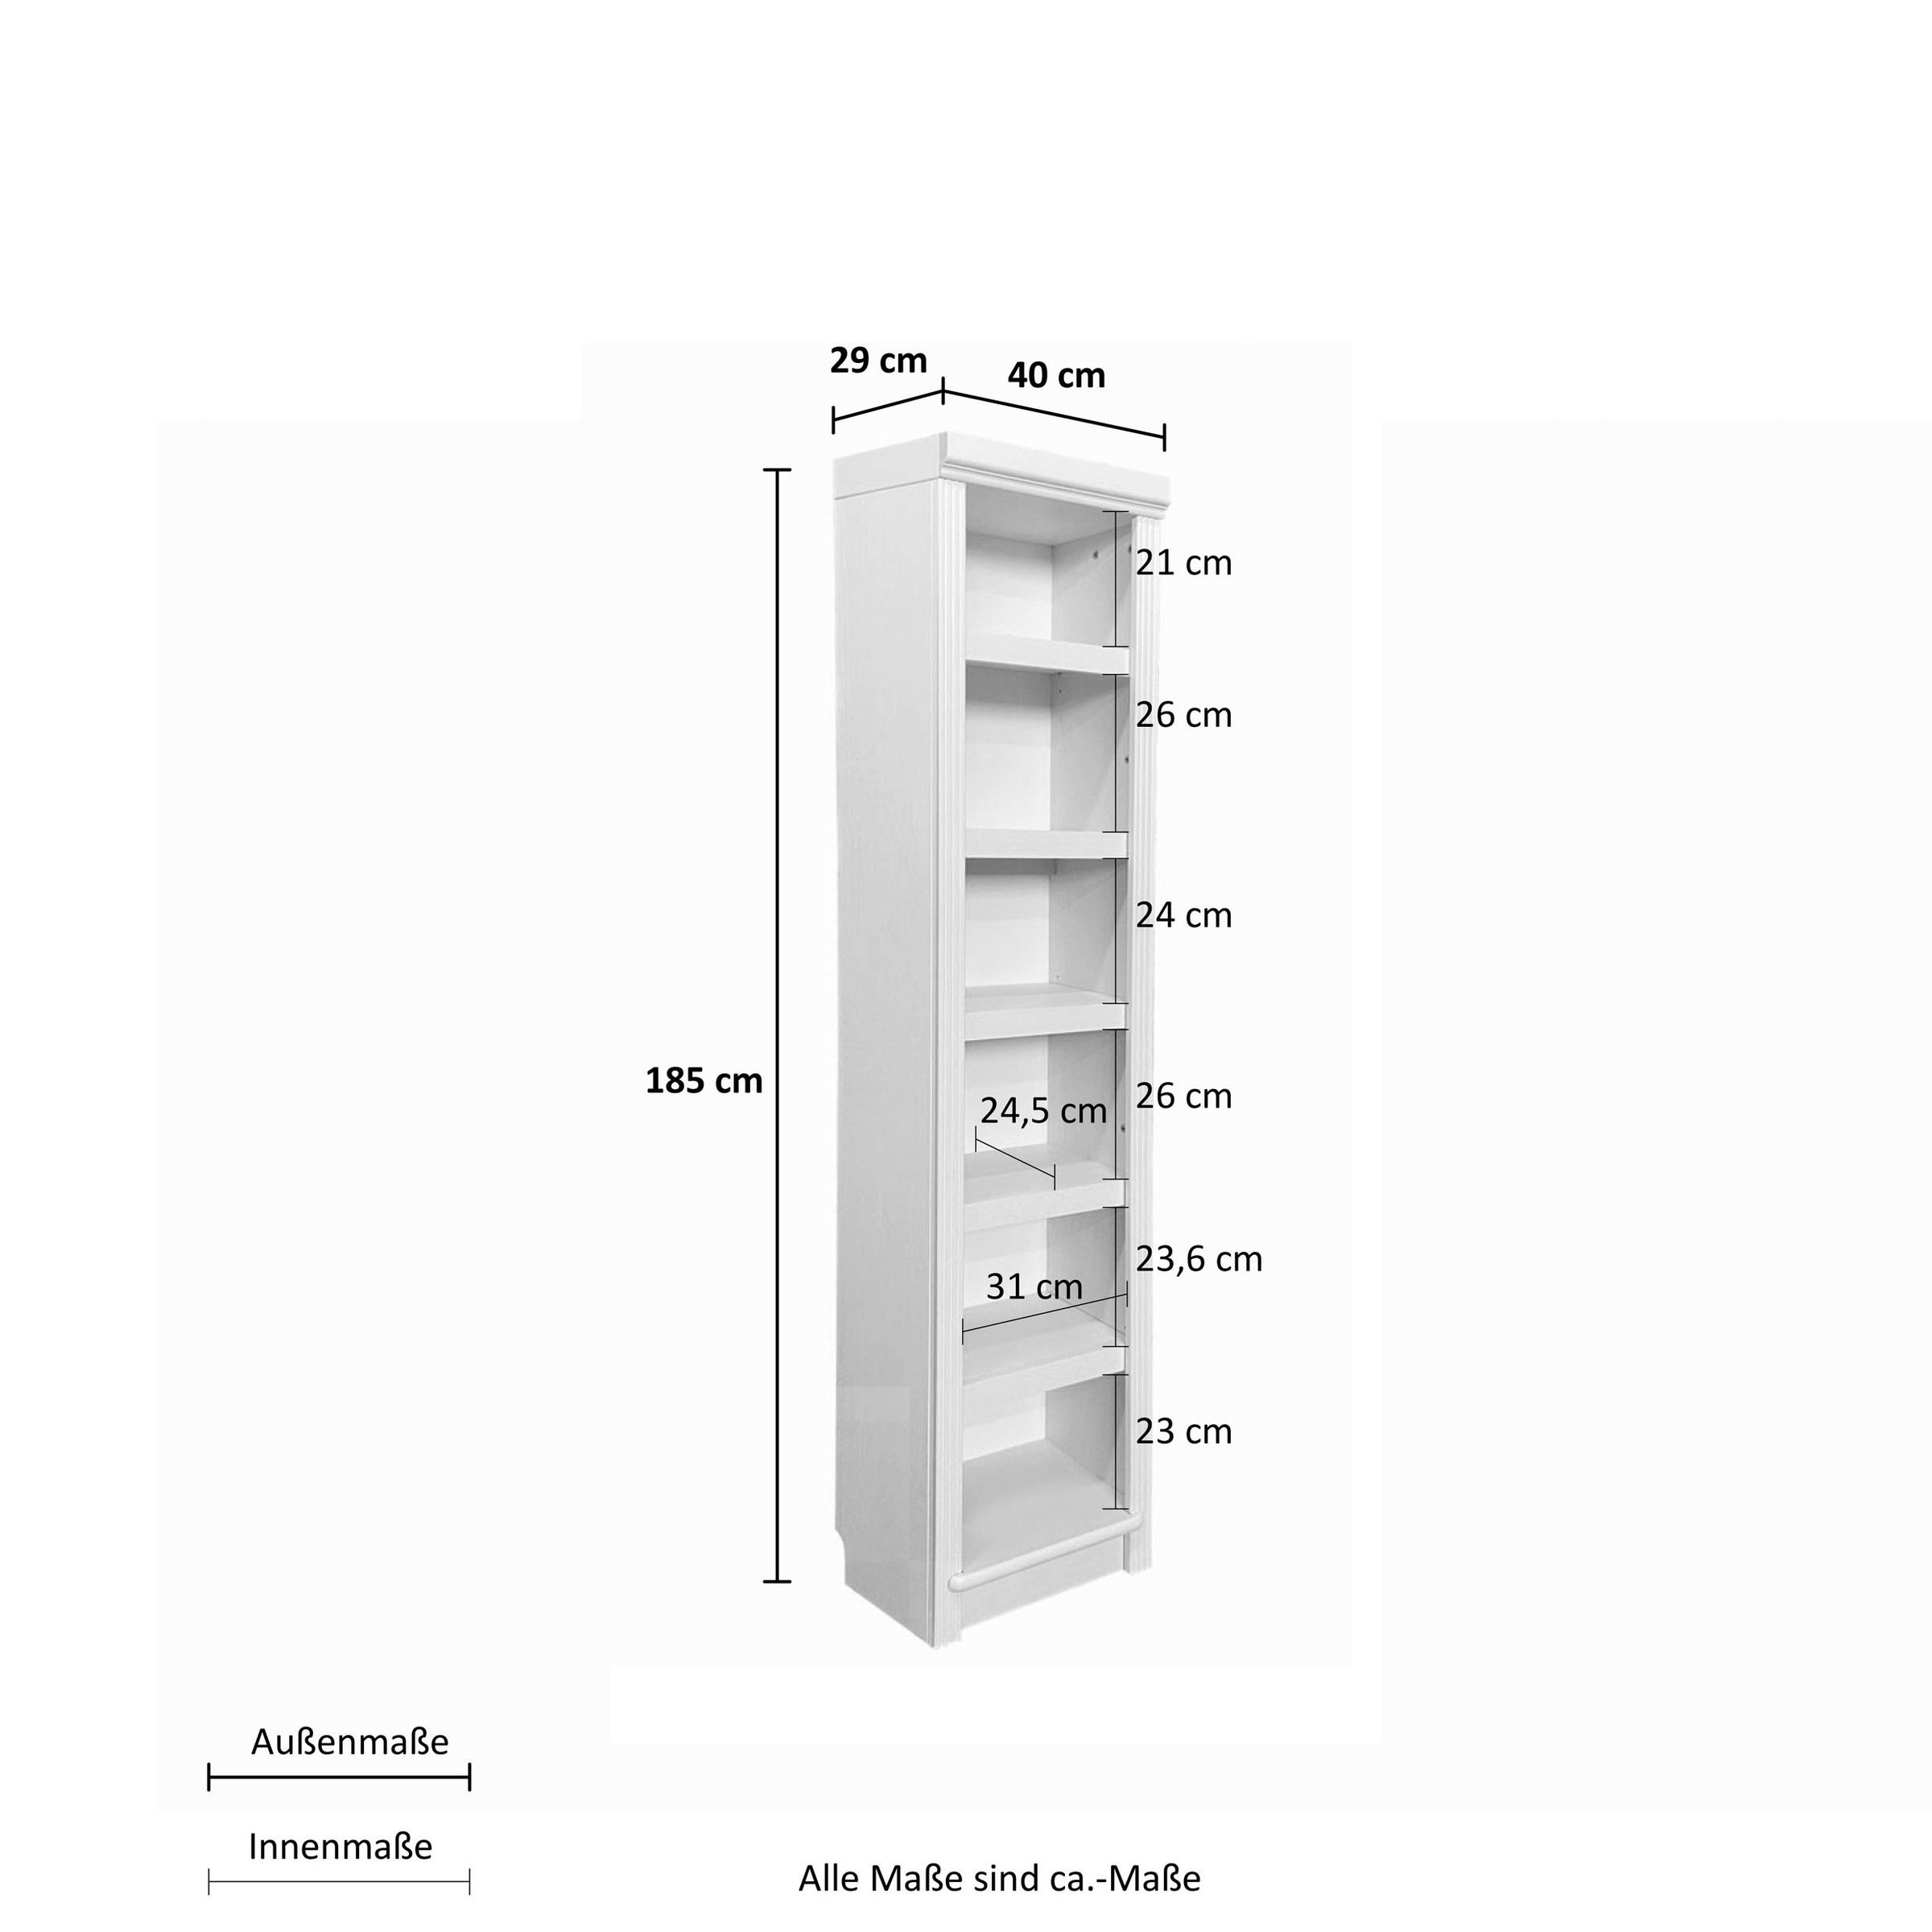 Home affaire Bücherregal »Soeren«, aus massiver Kiefer, in 2 Höhen, Tiefe 29 cm, mit viel Stauraum